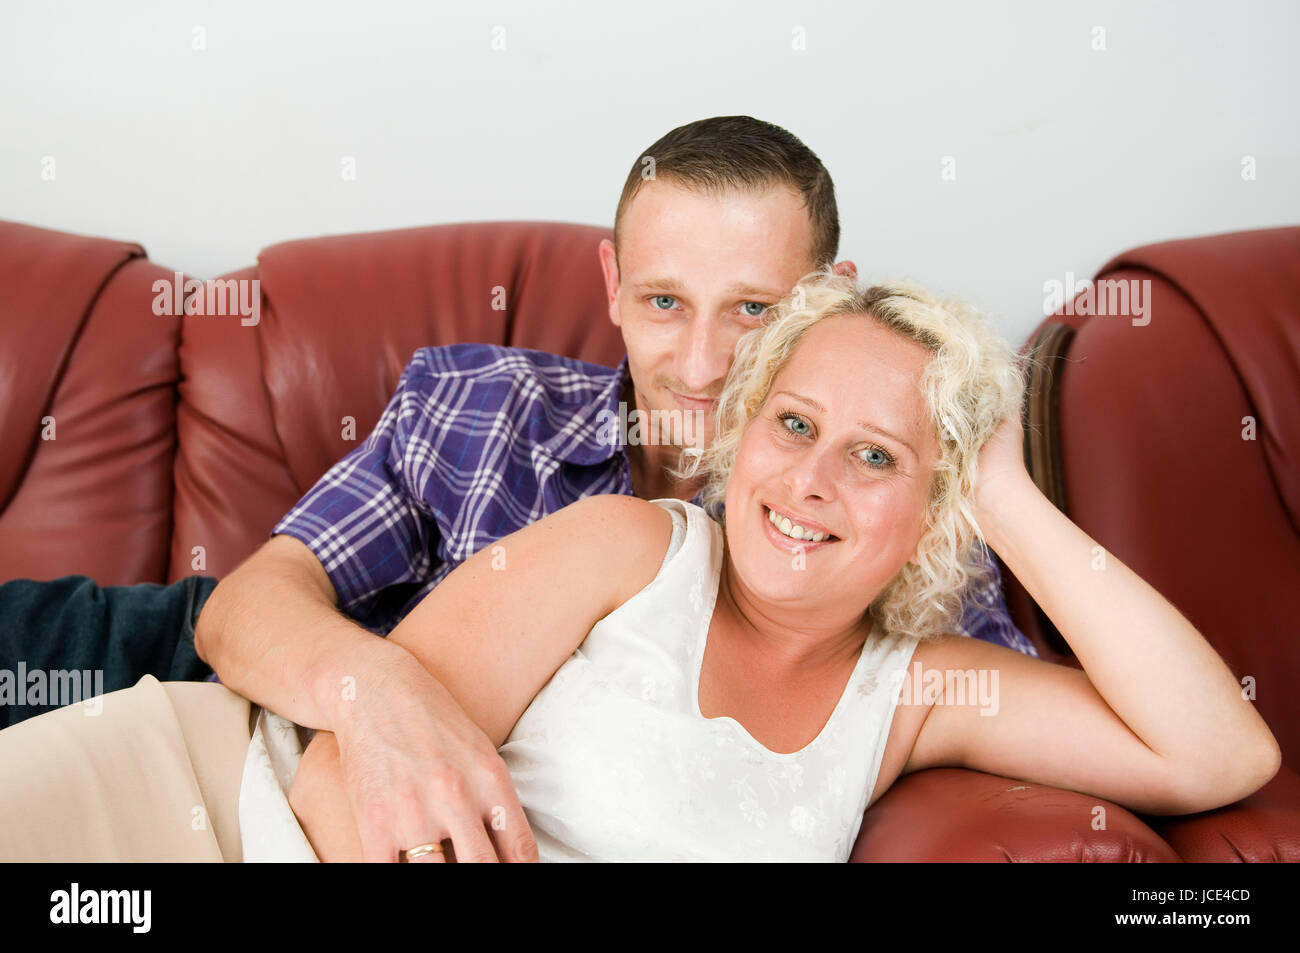 Oberkörper-Porträt eines jungen Paares hintereinander auf einem braunen Leder-Sofa liegend und glücklich in die Kamera lächelnd Stock Photo